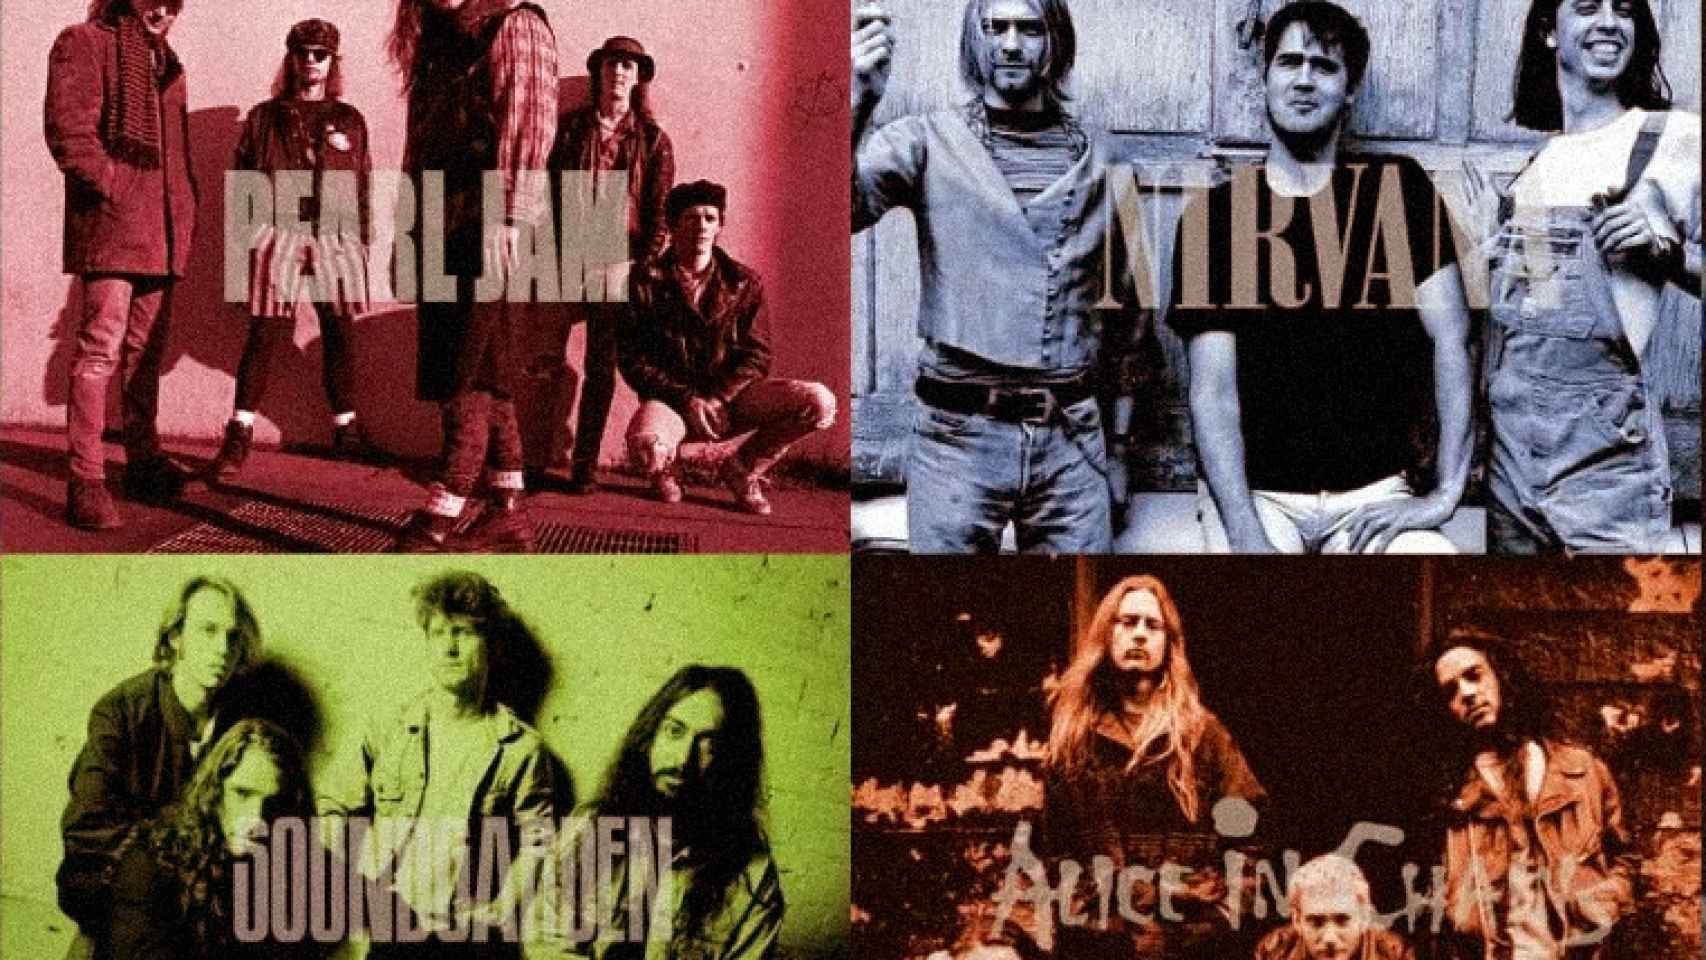 Las bandas grunge Pearl Jam, Nirvana, Alice in Chains y Soundgarden